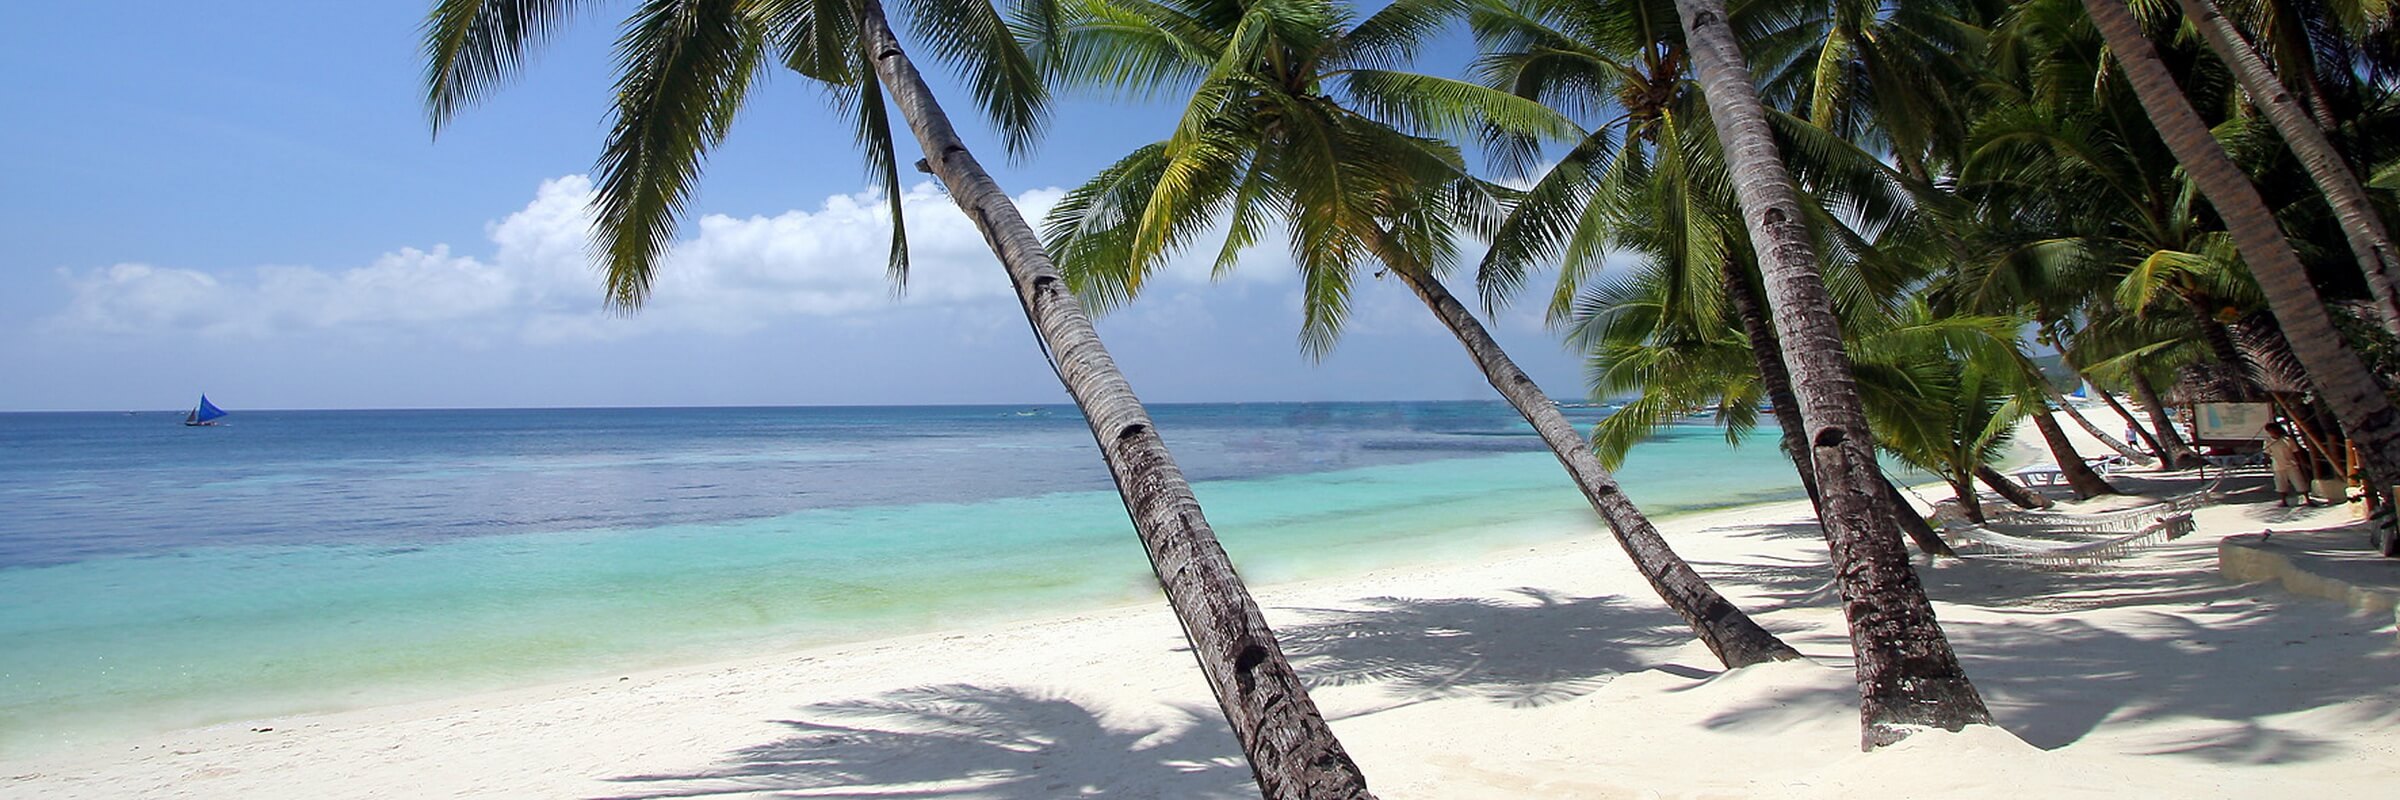 Baden in den Philippinen ist wie baden im Paradies, hier kann man genug Strandaktivitäten machen.